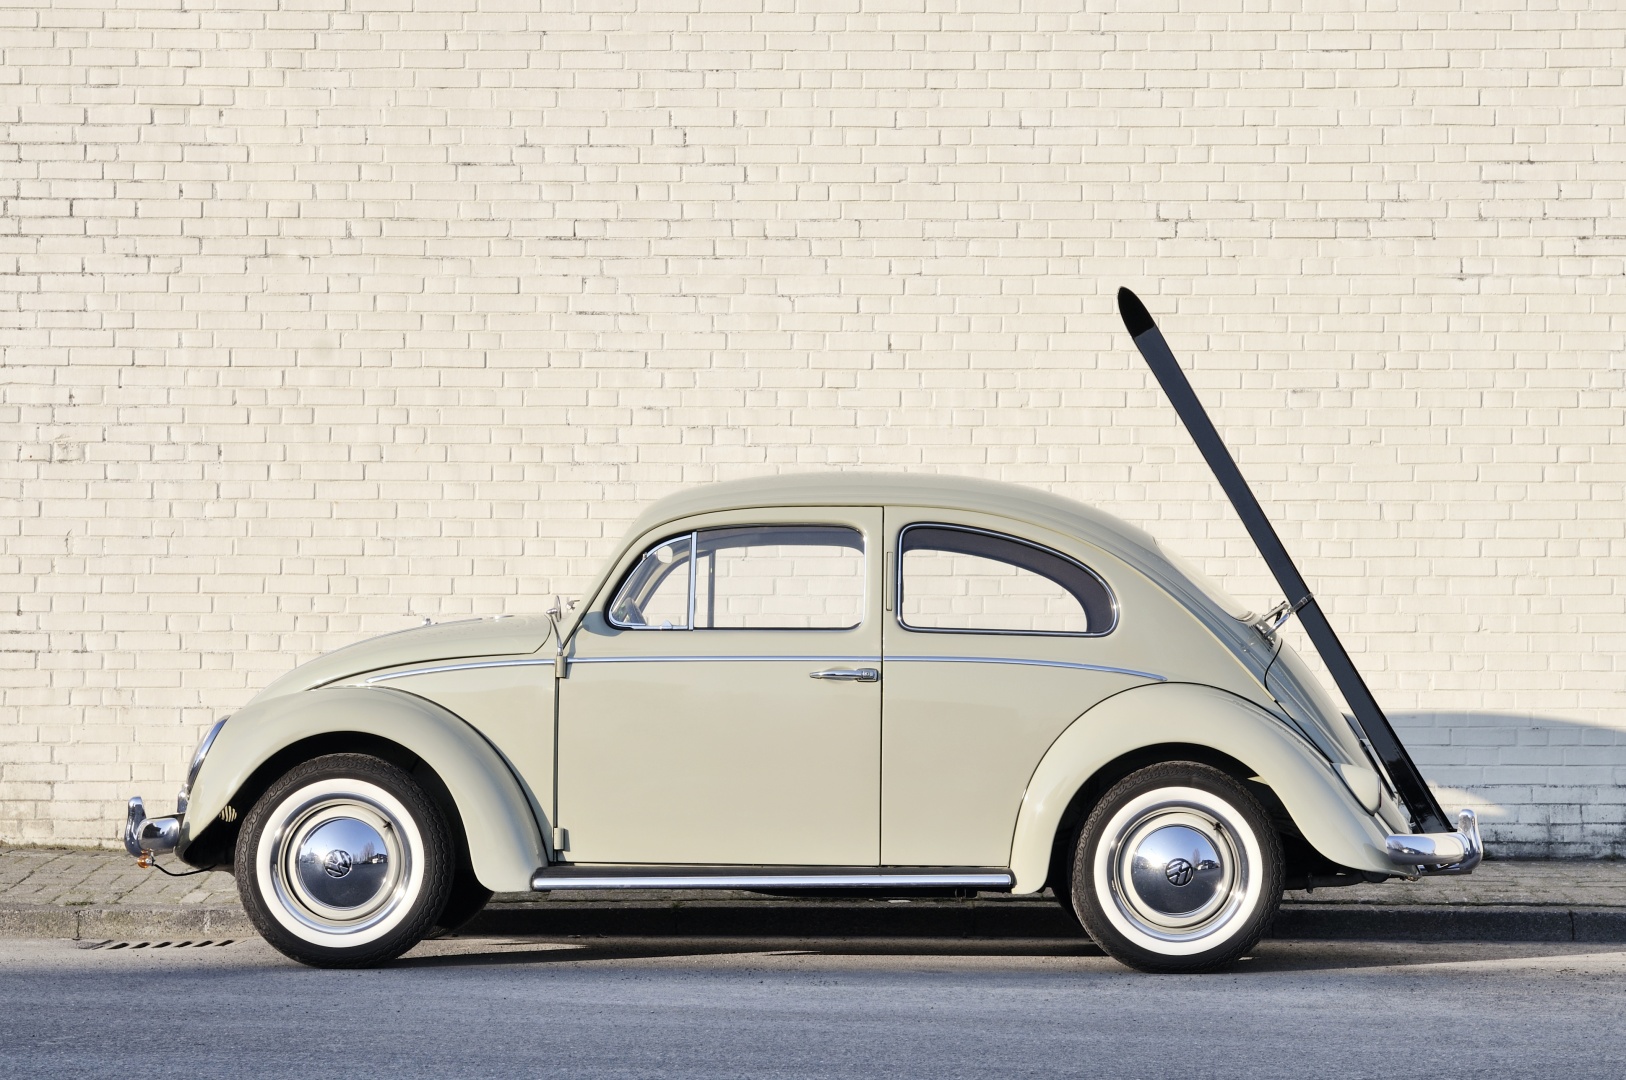 ความลับของรถเต่า ‘Volkswagen Beetle’ ในตำนาน